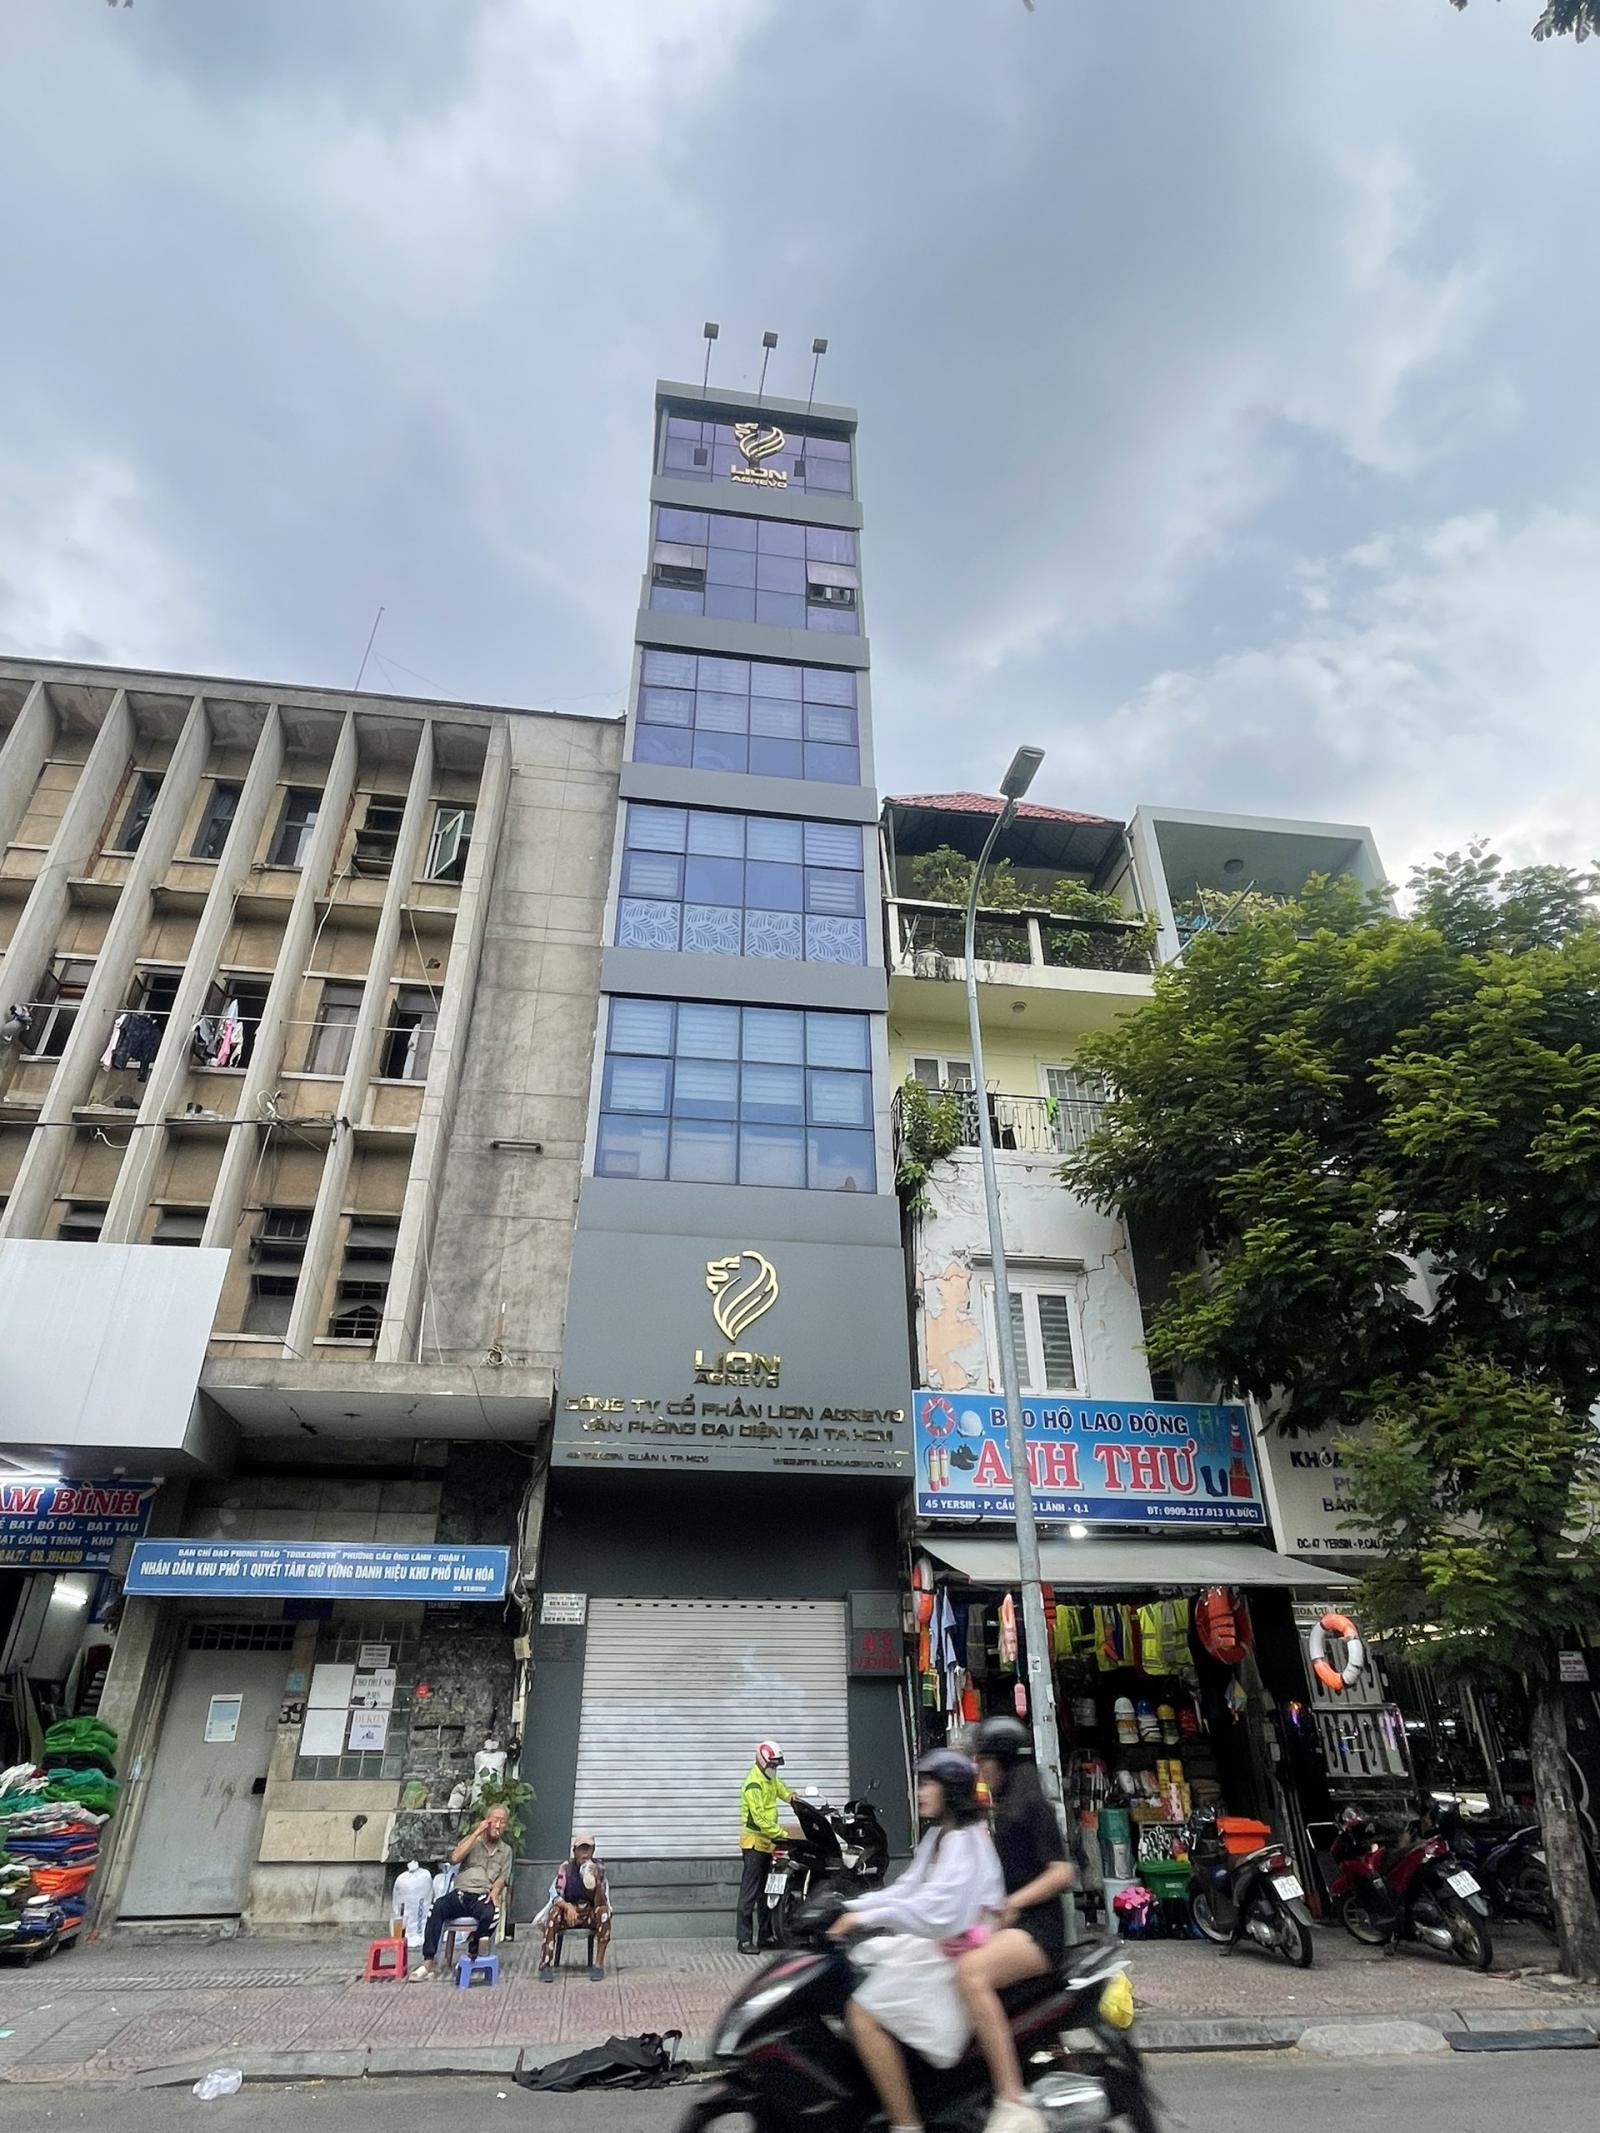 Bán nhà mặt phố đường Nguyễn Công Trứ Quận 1, kết cấu 1 hầm 6 tầng, giá 39 tỷ